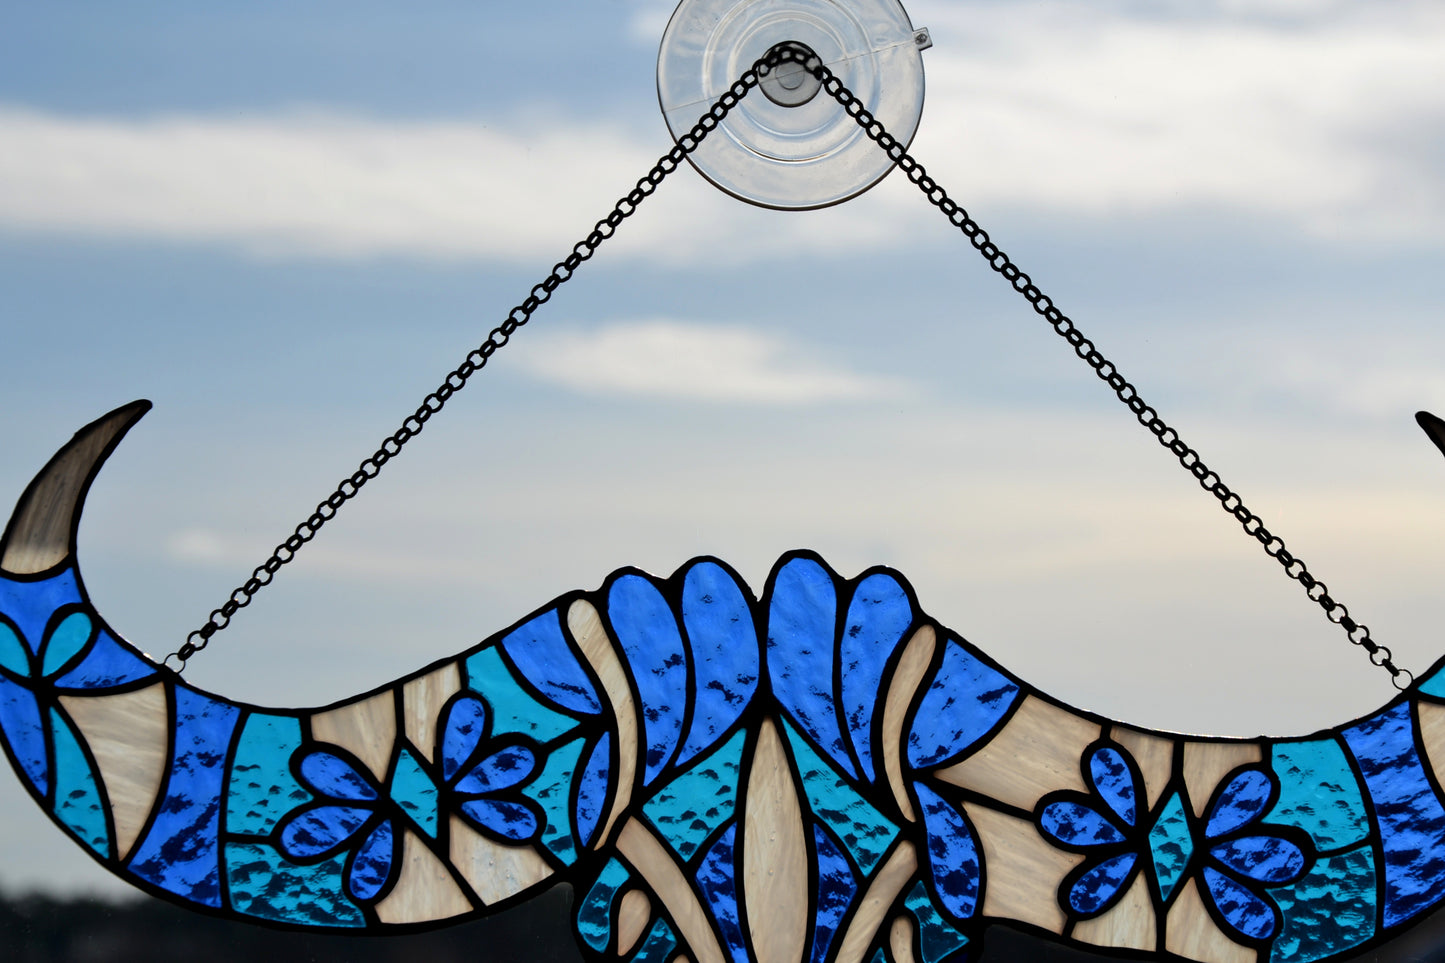 Stained glass suncatcher Window hanging Bull skull Folk art Garden decor Mother's day gift